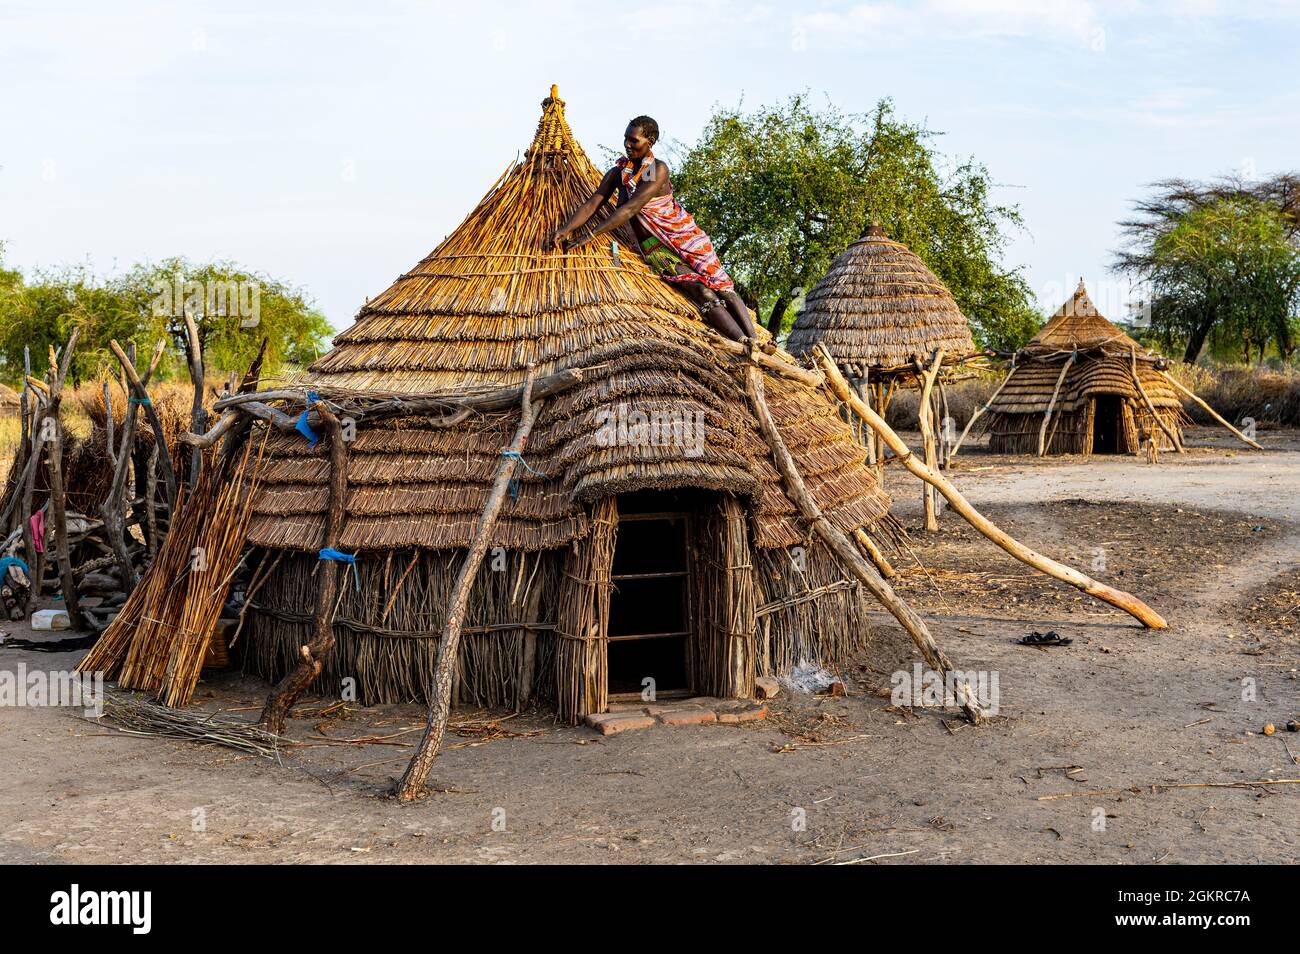 Frau, die ein Dach einer traditionellen Hütte des Stammes Toposa, Eastern Equatoria, Südsudan, Afrika repariert Stockfoto